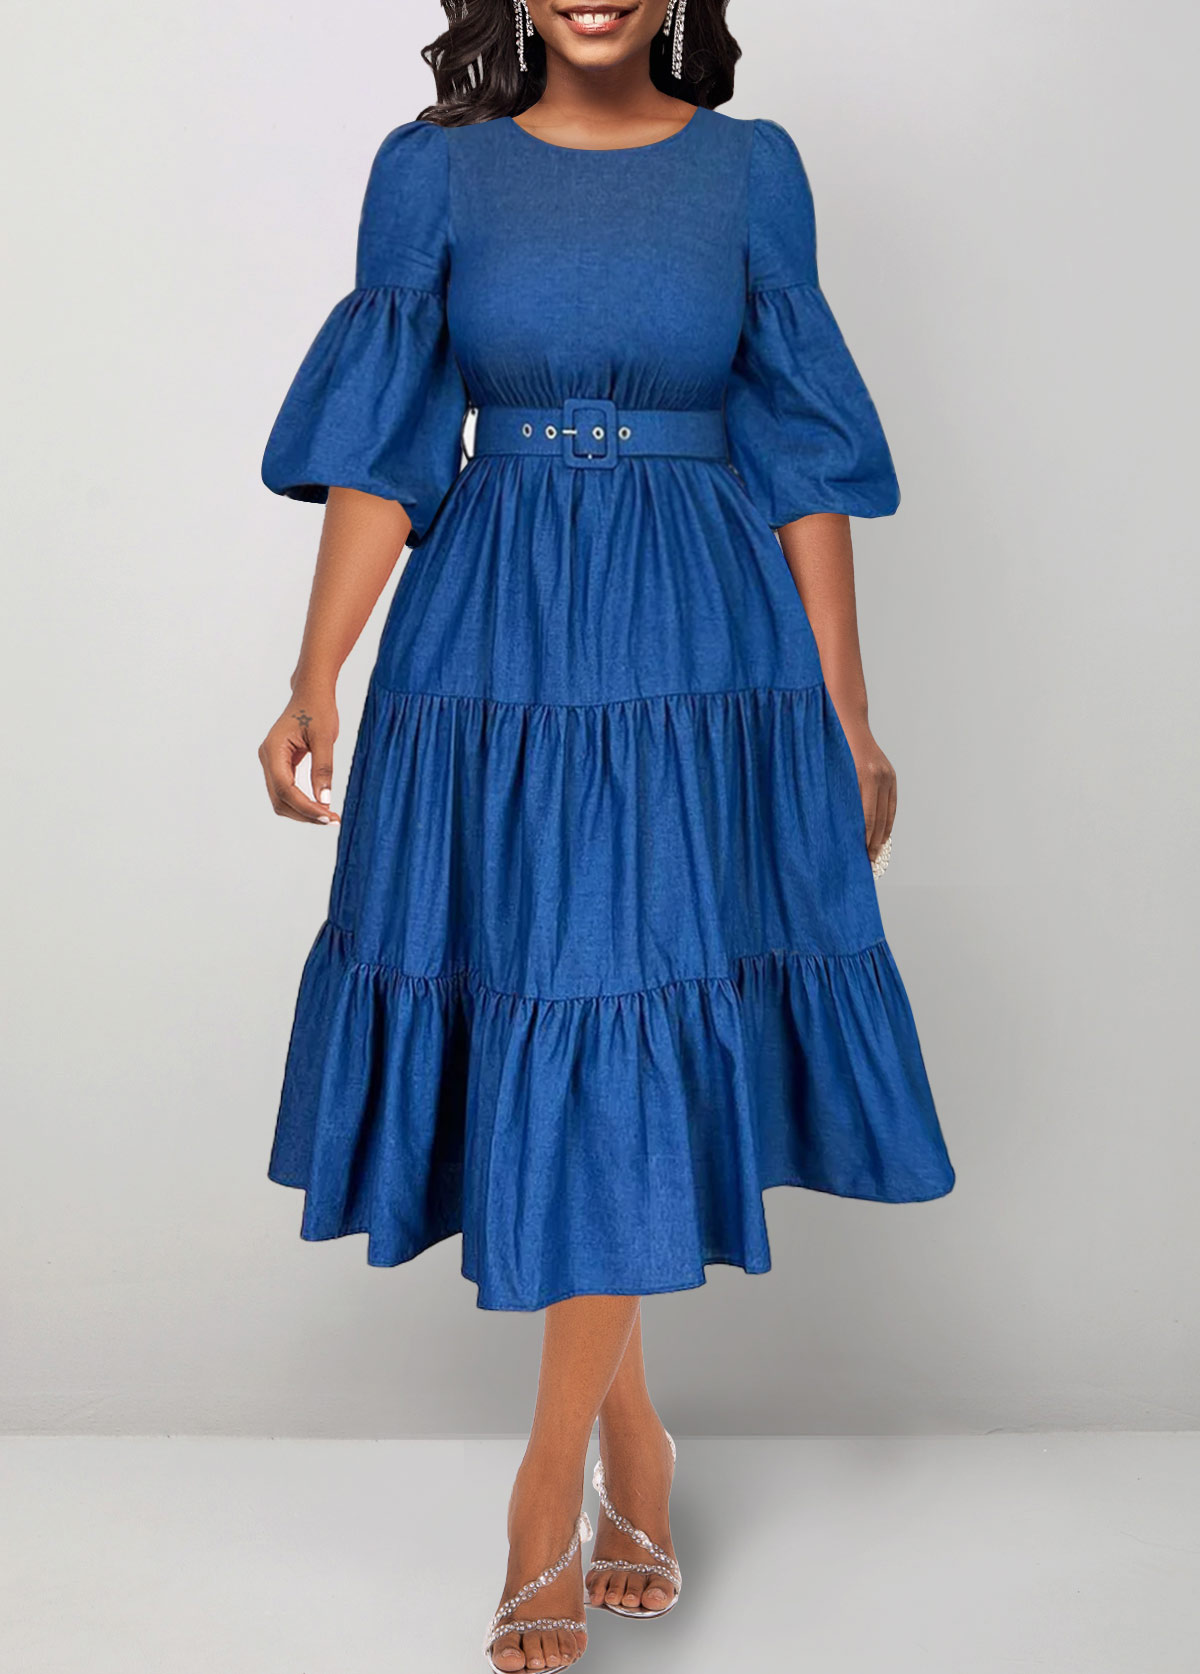 Ruched Belted Denim Blue Round Neck Dress